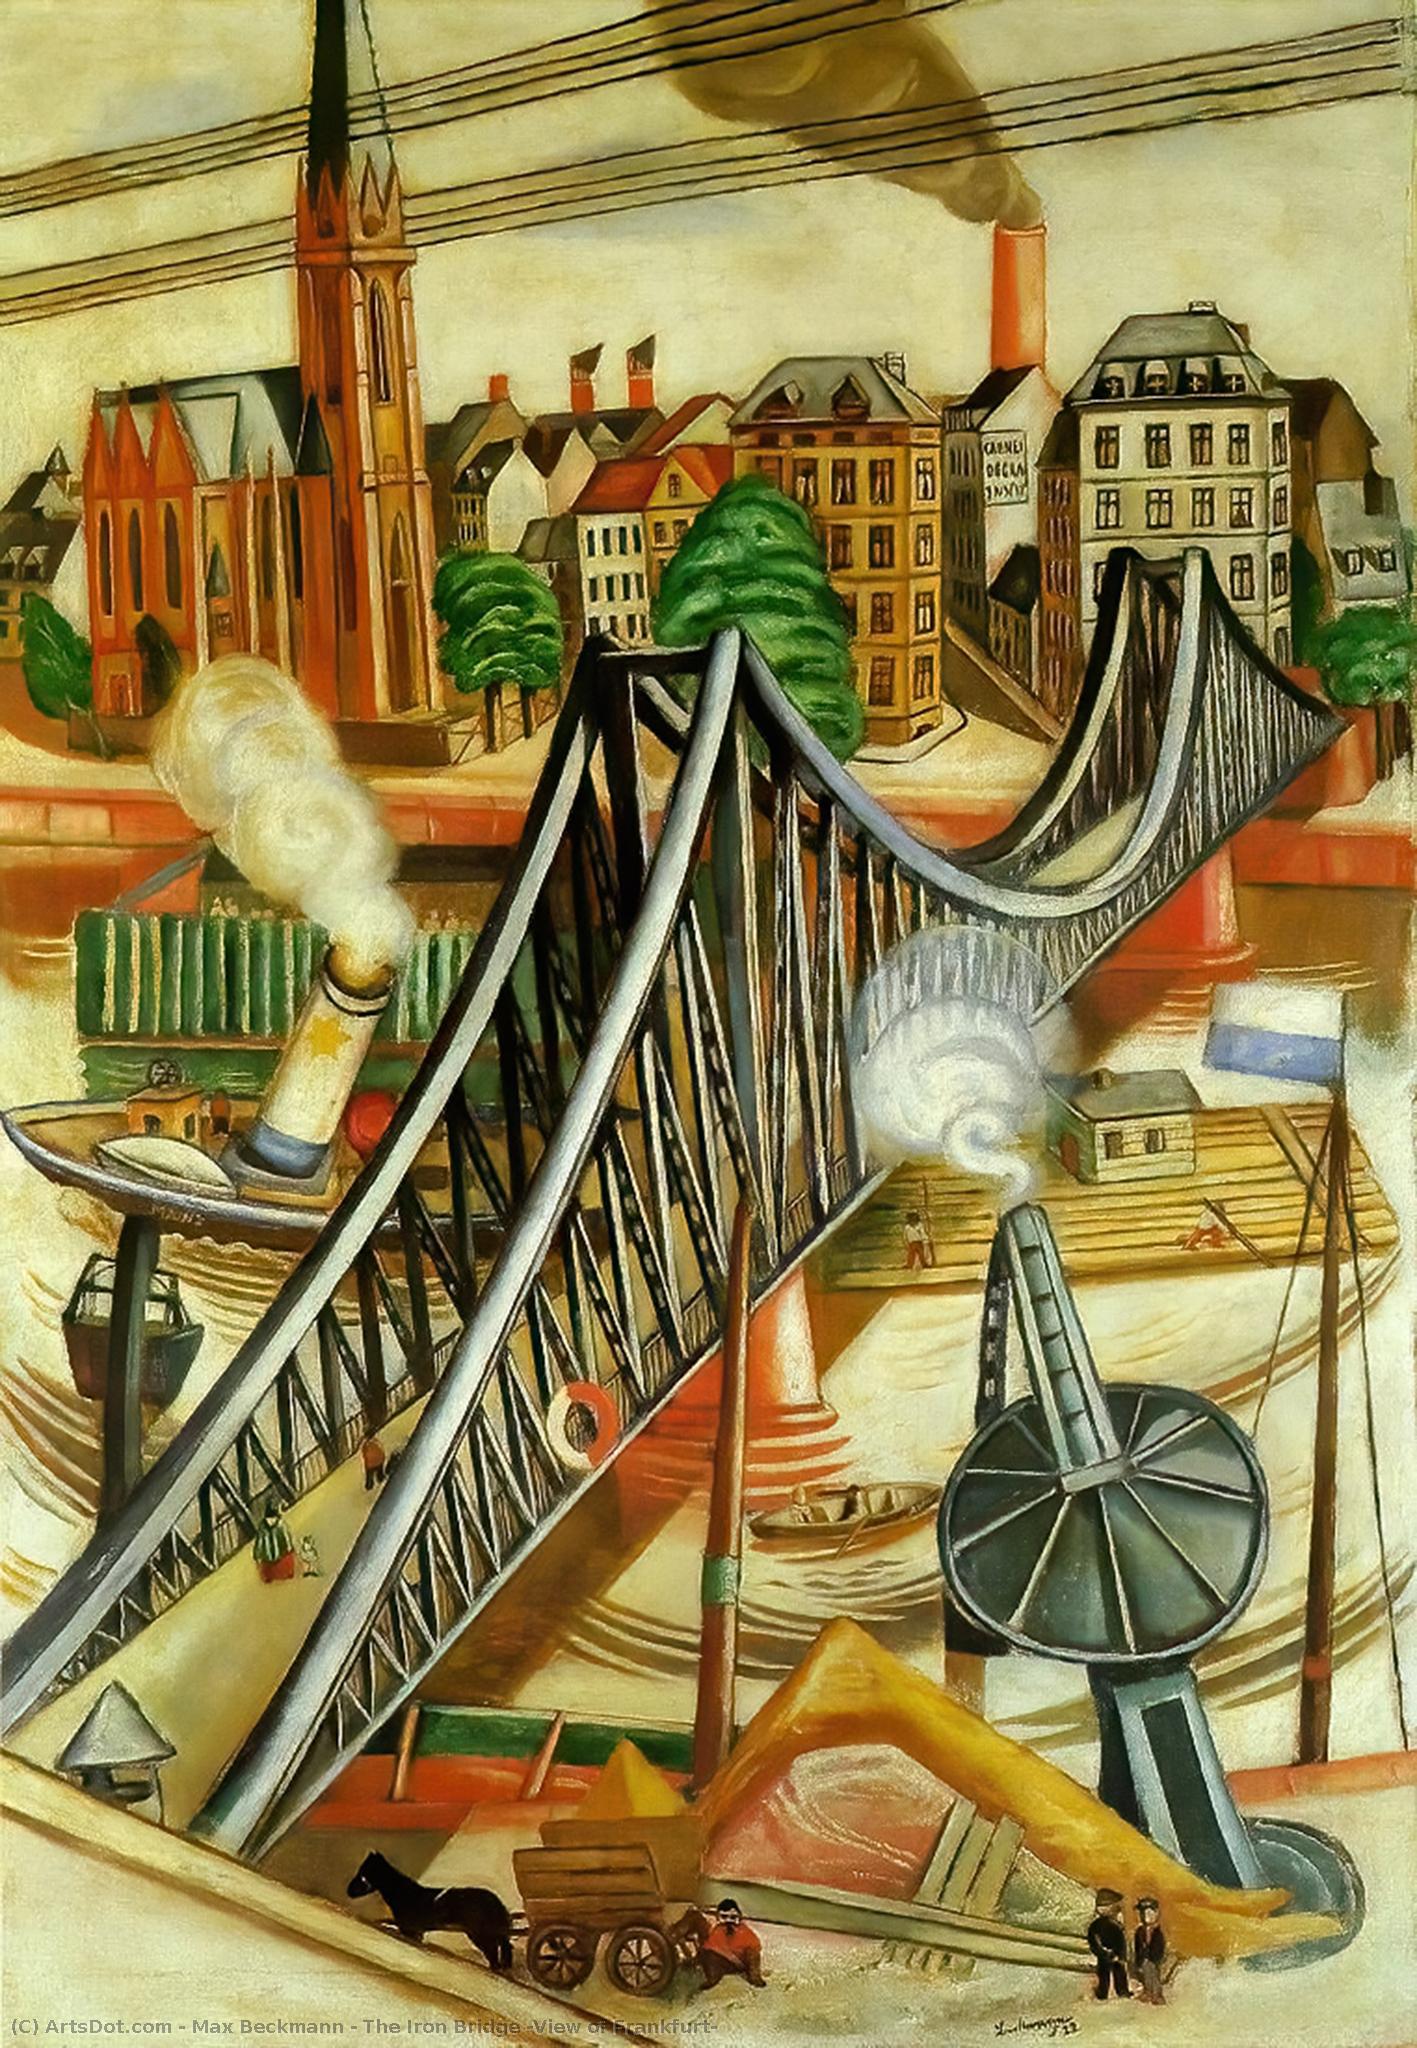 Achat Reproductions De Qualité Musée Le pont de fer (Vue de Francfort), 1922 de Max Beckmann (1884-1950, Germany) | ArtsDot.com